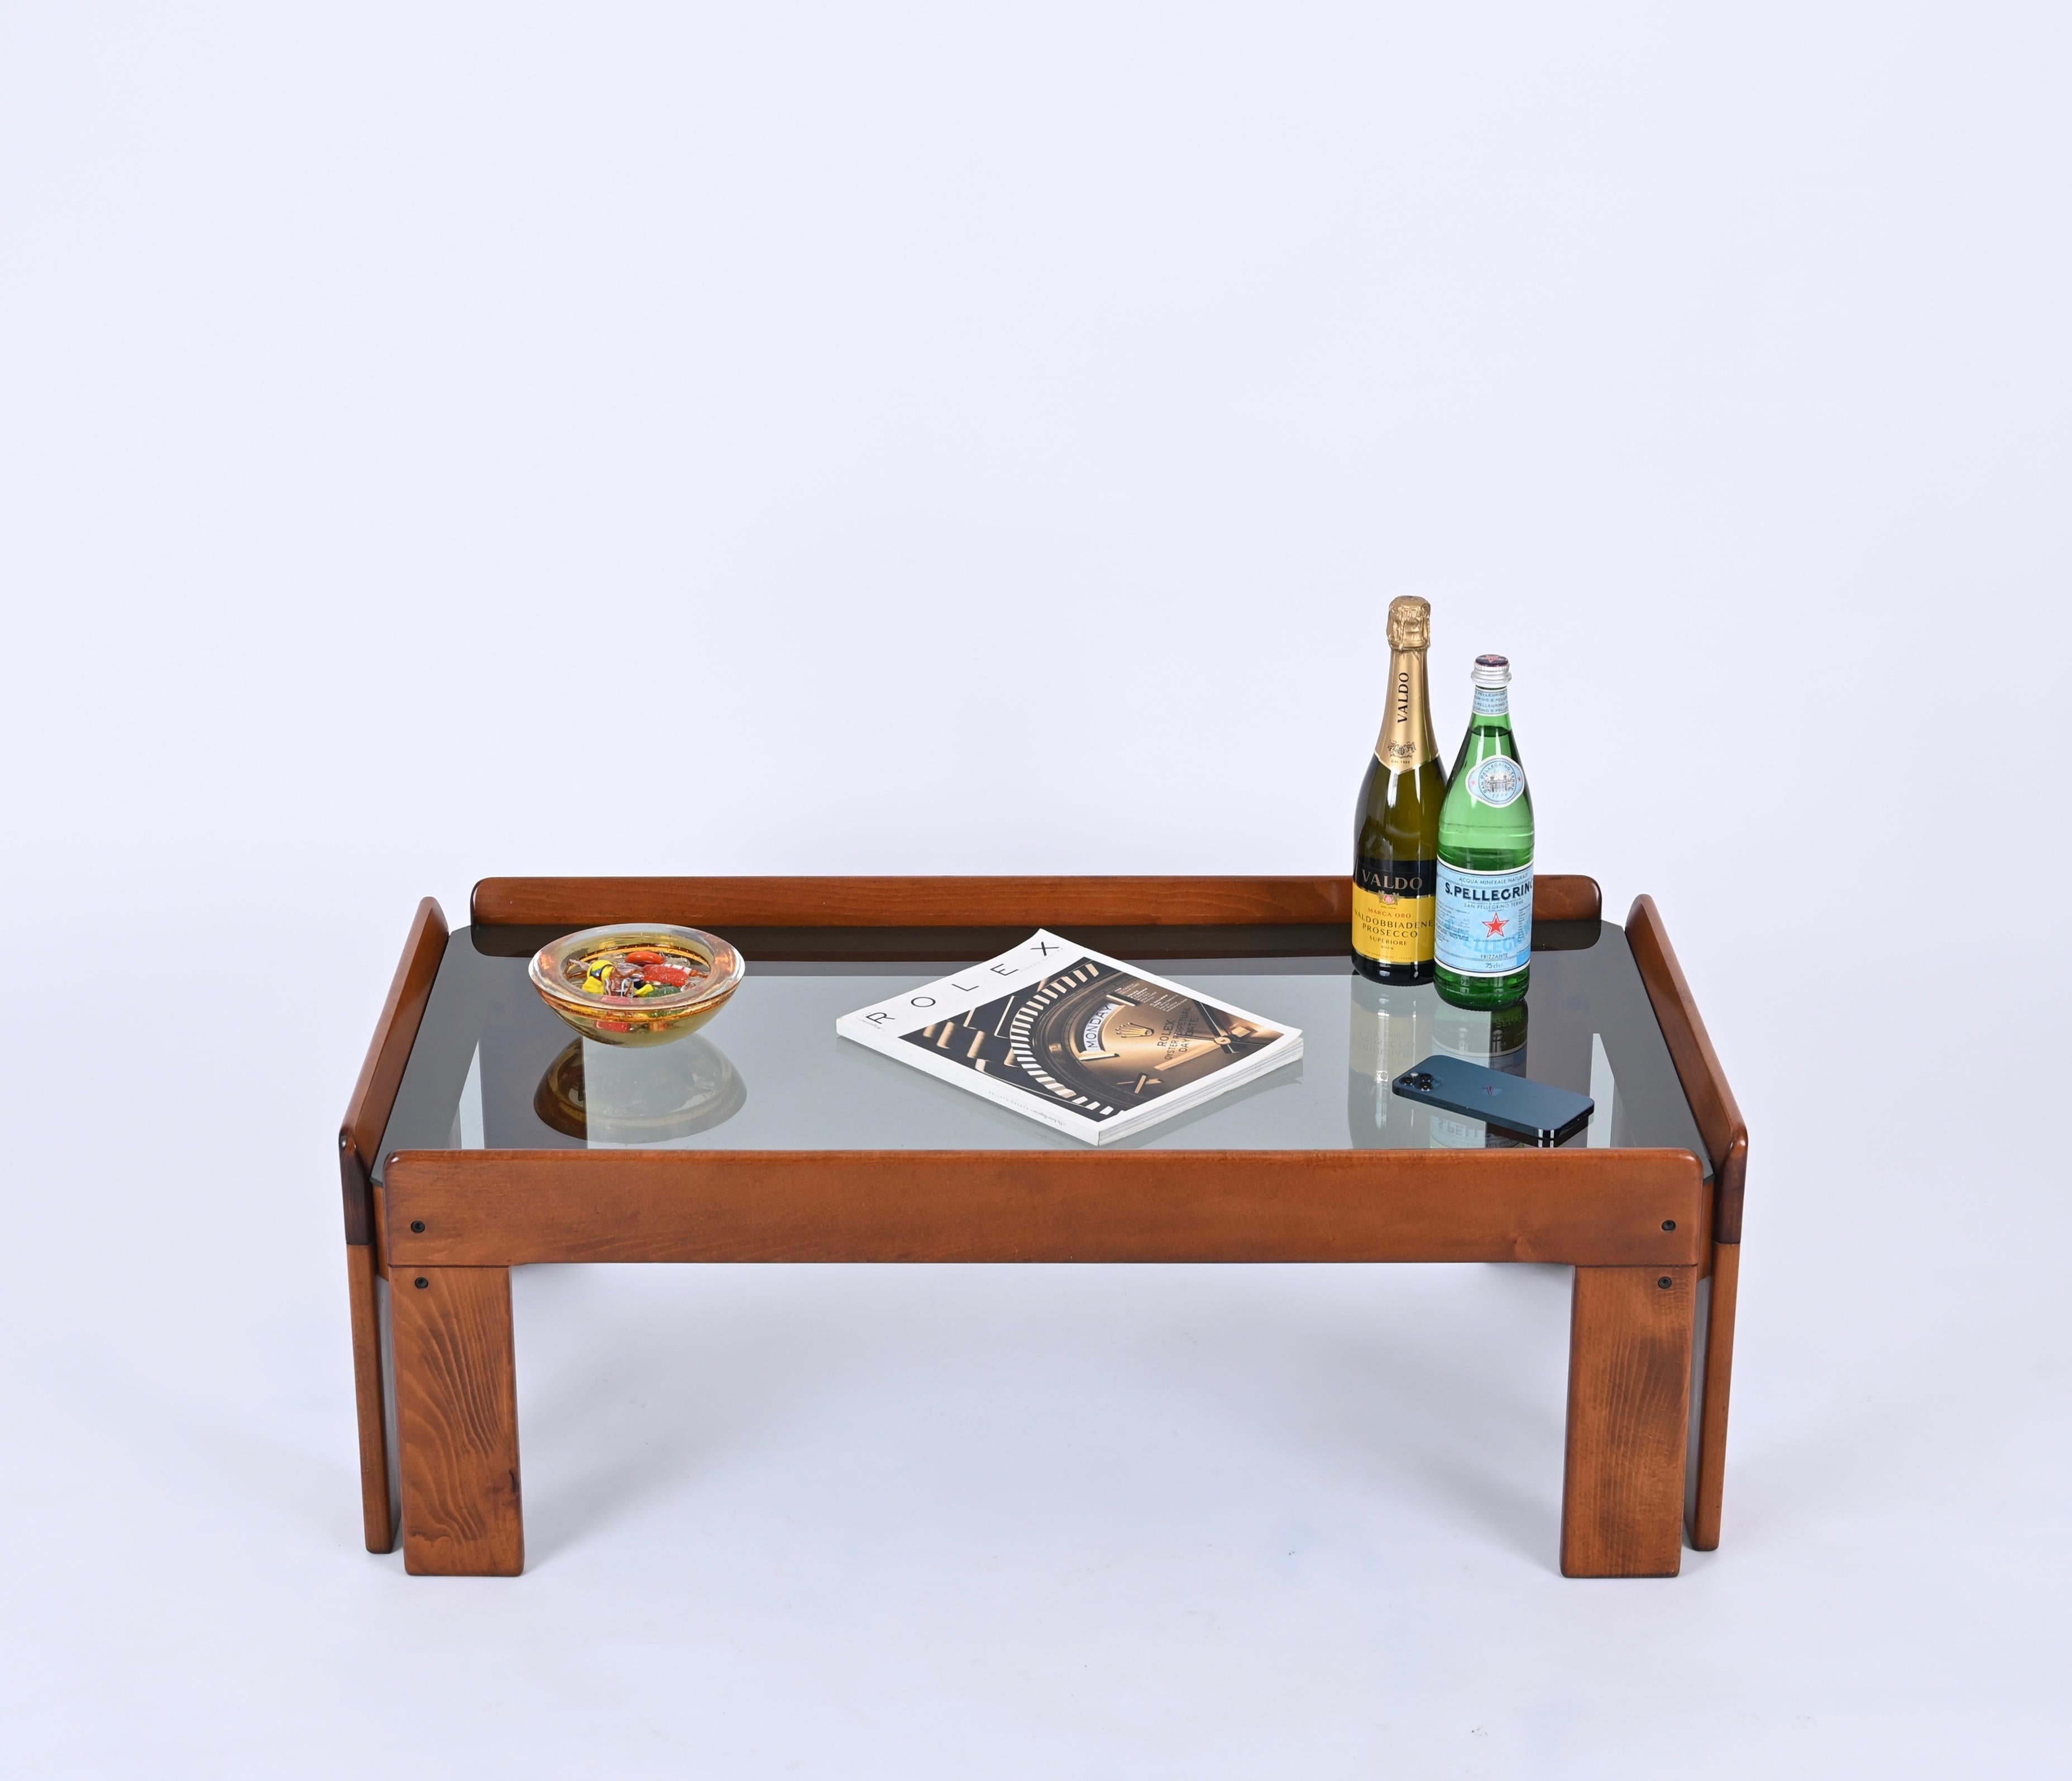 Superbe table basse rectangulaire en noyer du milieu du siècle dernier, conçue par Afra & Tobia Scarpa pour Gavina en Italie dans les années 1960.  

Cette magnifique table basse est fabriquée en noyer massif d'une qualité exceptionnelle, les veines